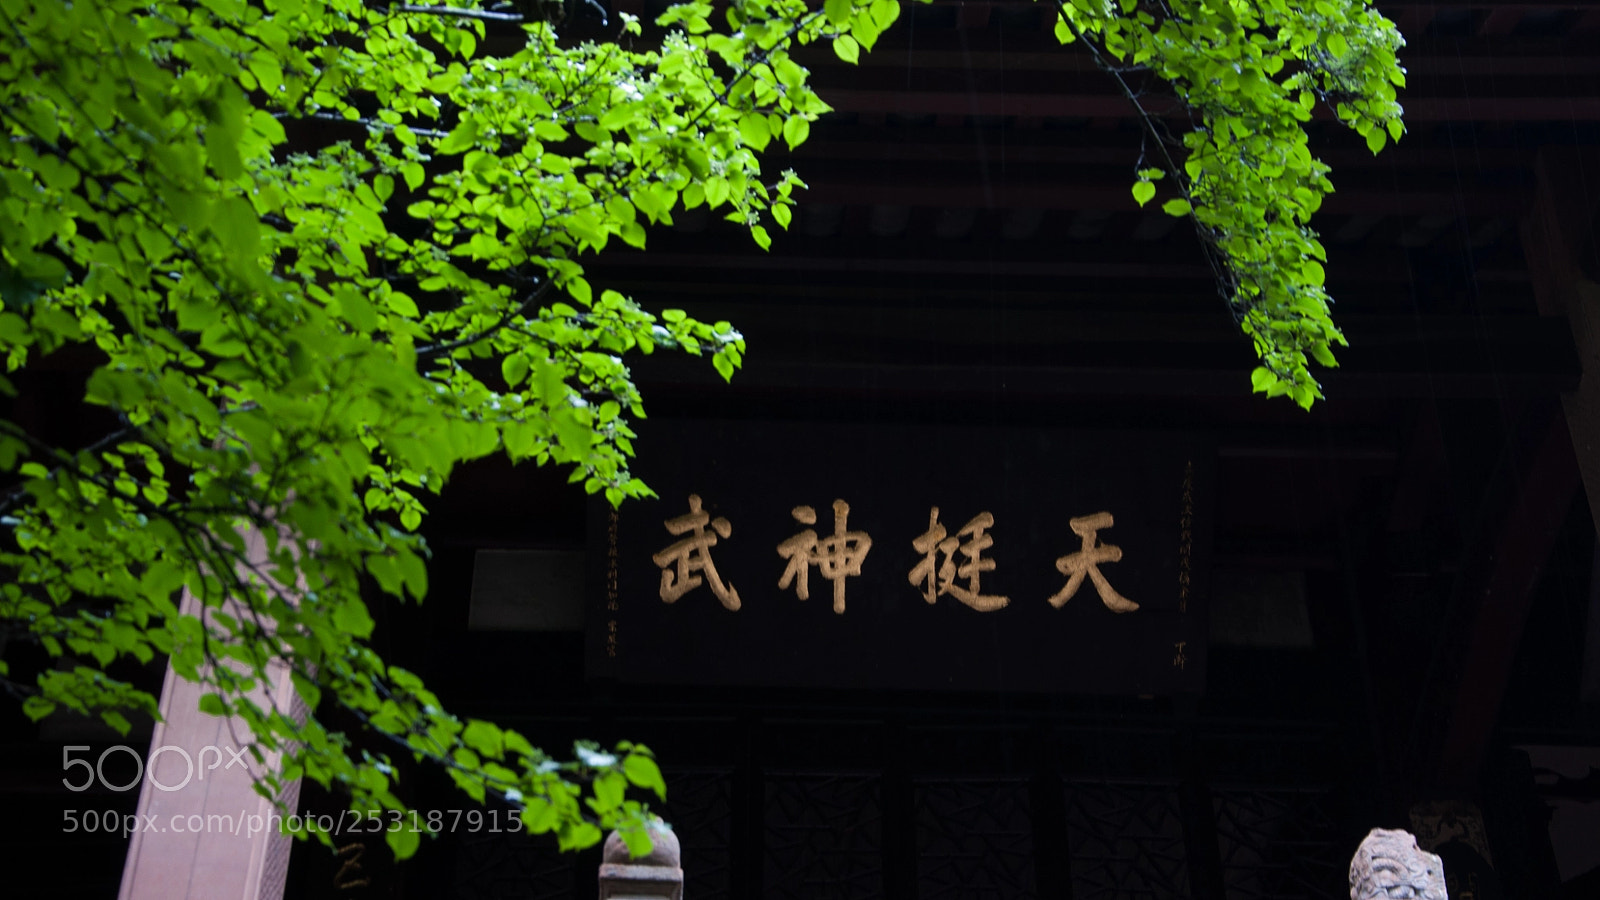 Nikon D90 sample photo. A taoist temple photography